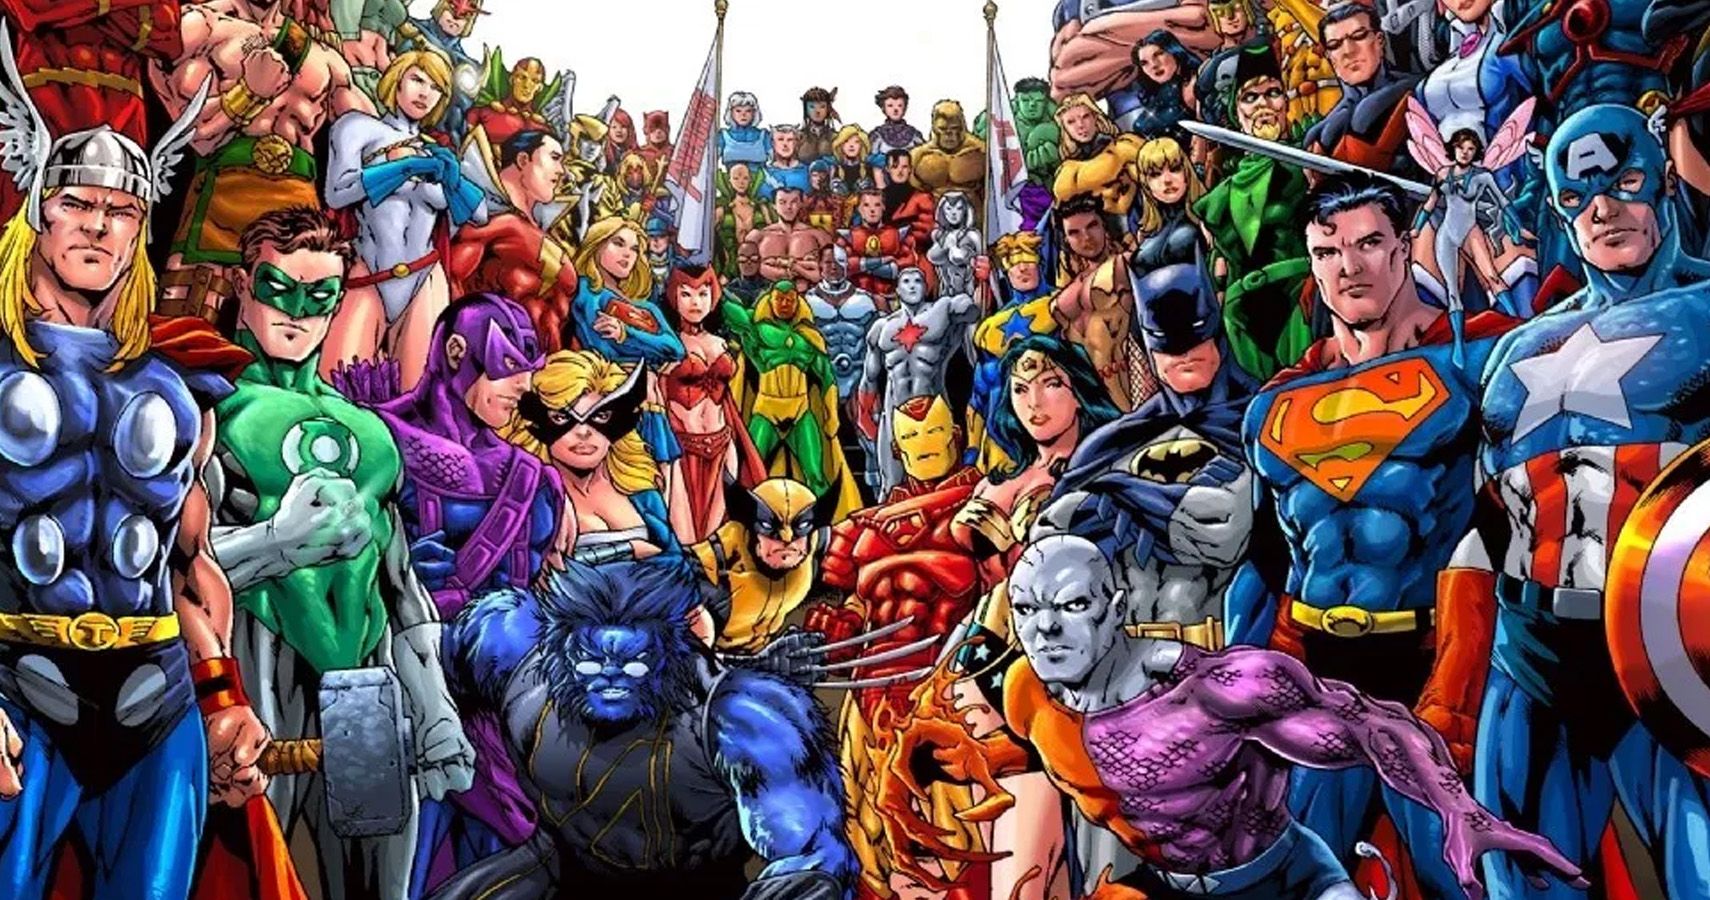 Is super heroes. Супергерои DC vs Marvel. Марвел vs DC. Комиксы Марвел и ДС. Популярные герои комиксов.